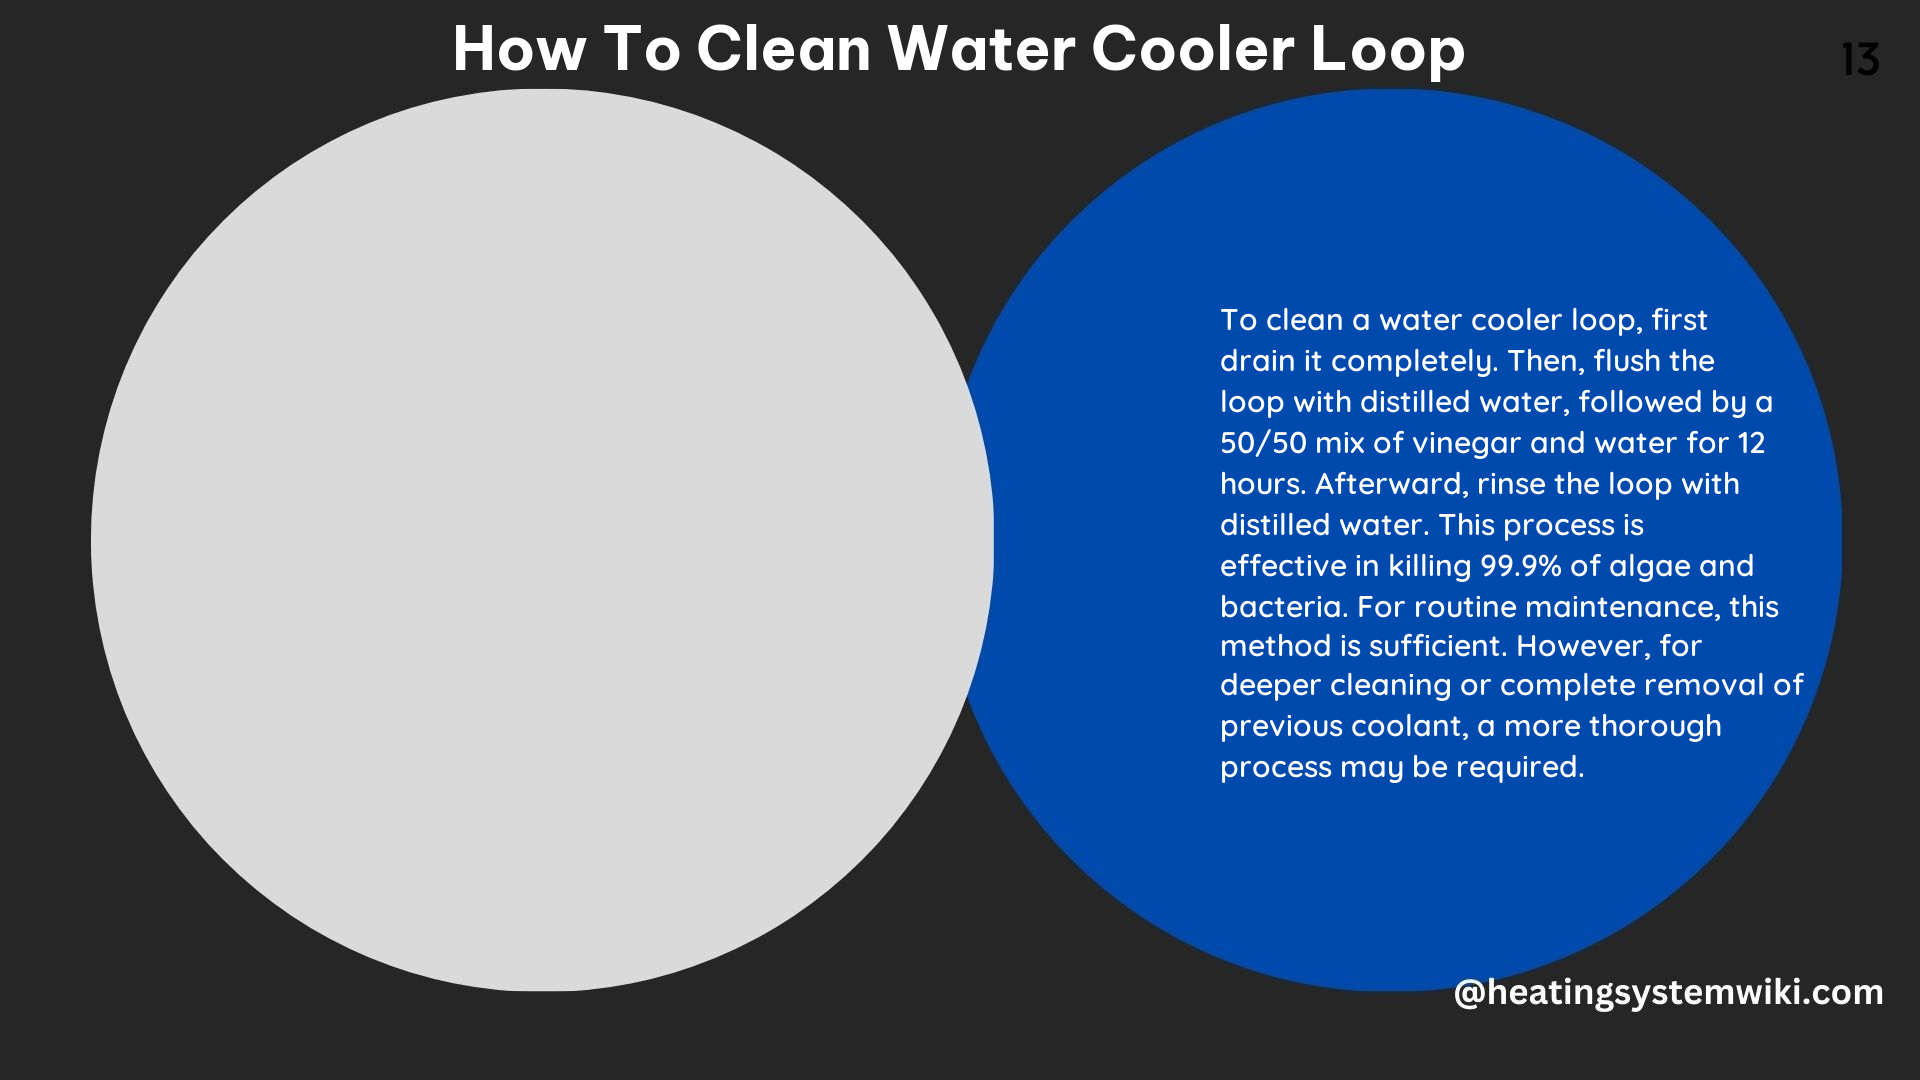 How to Clean Water Cooler Loop